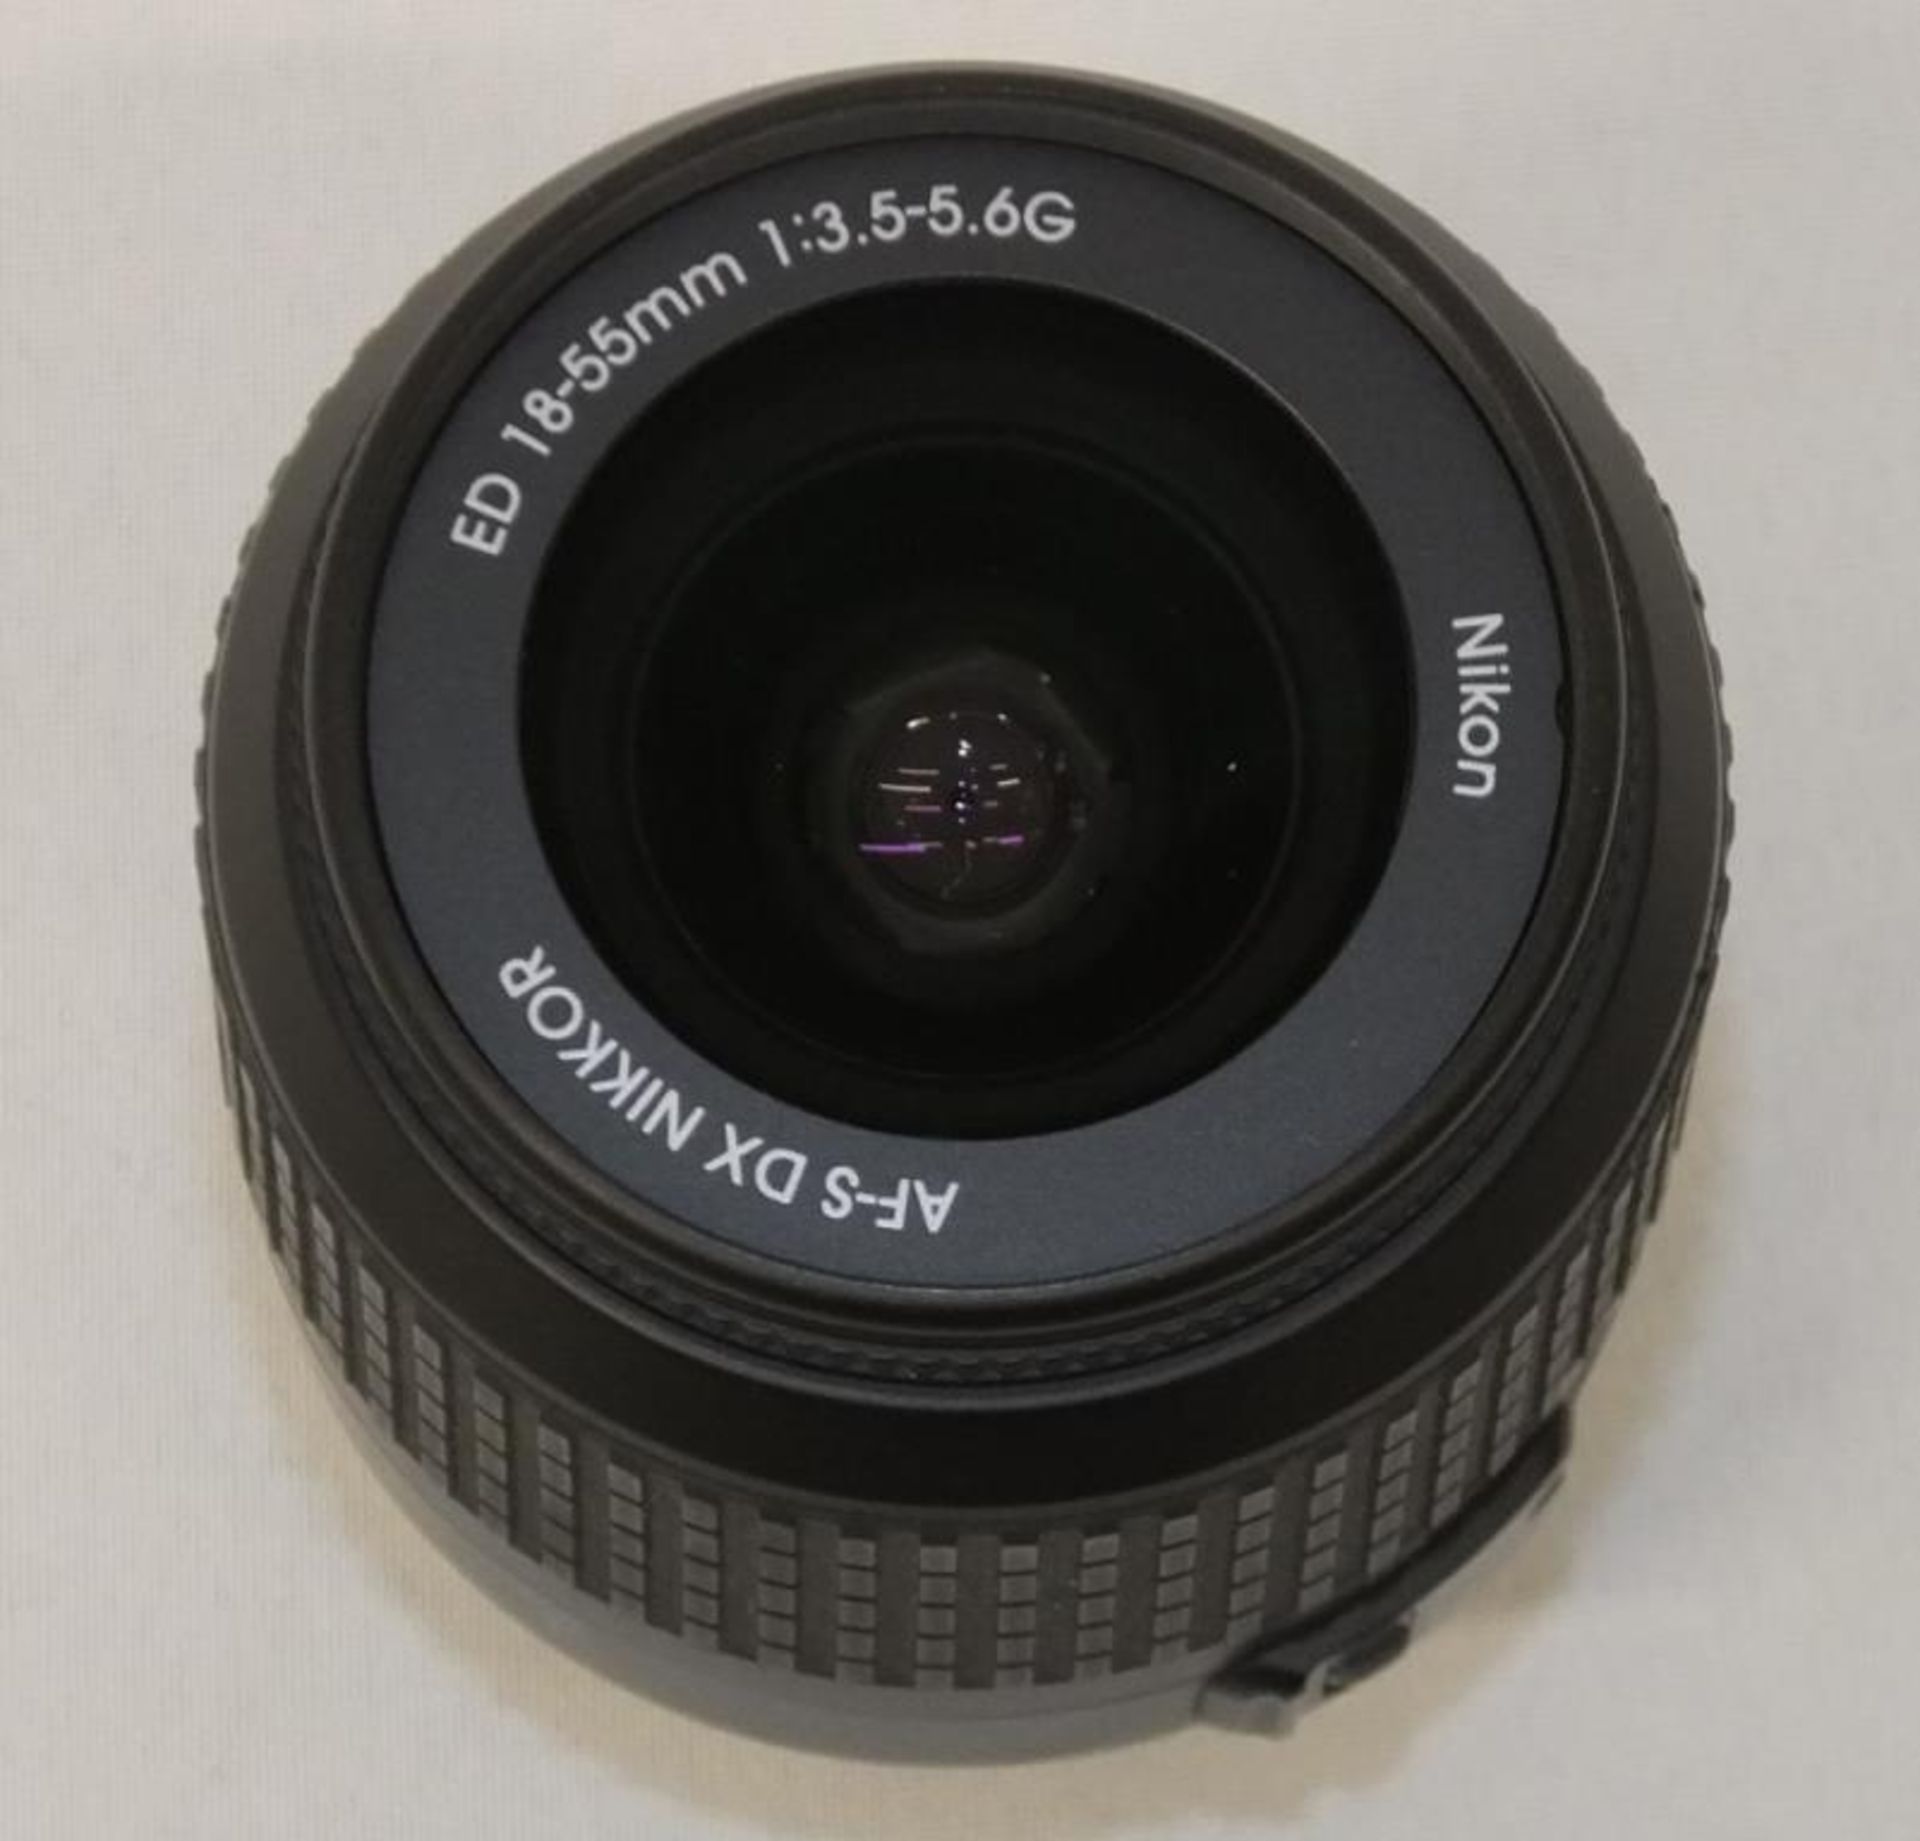 Nikon DX AF-S Nikkor 18-55mm - 1:3.5-5.6G ED Lens - Serial No. 2169434 with HOYA 52mm UV(O) Filter - Image 5 of 8